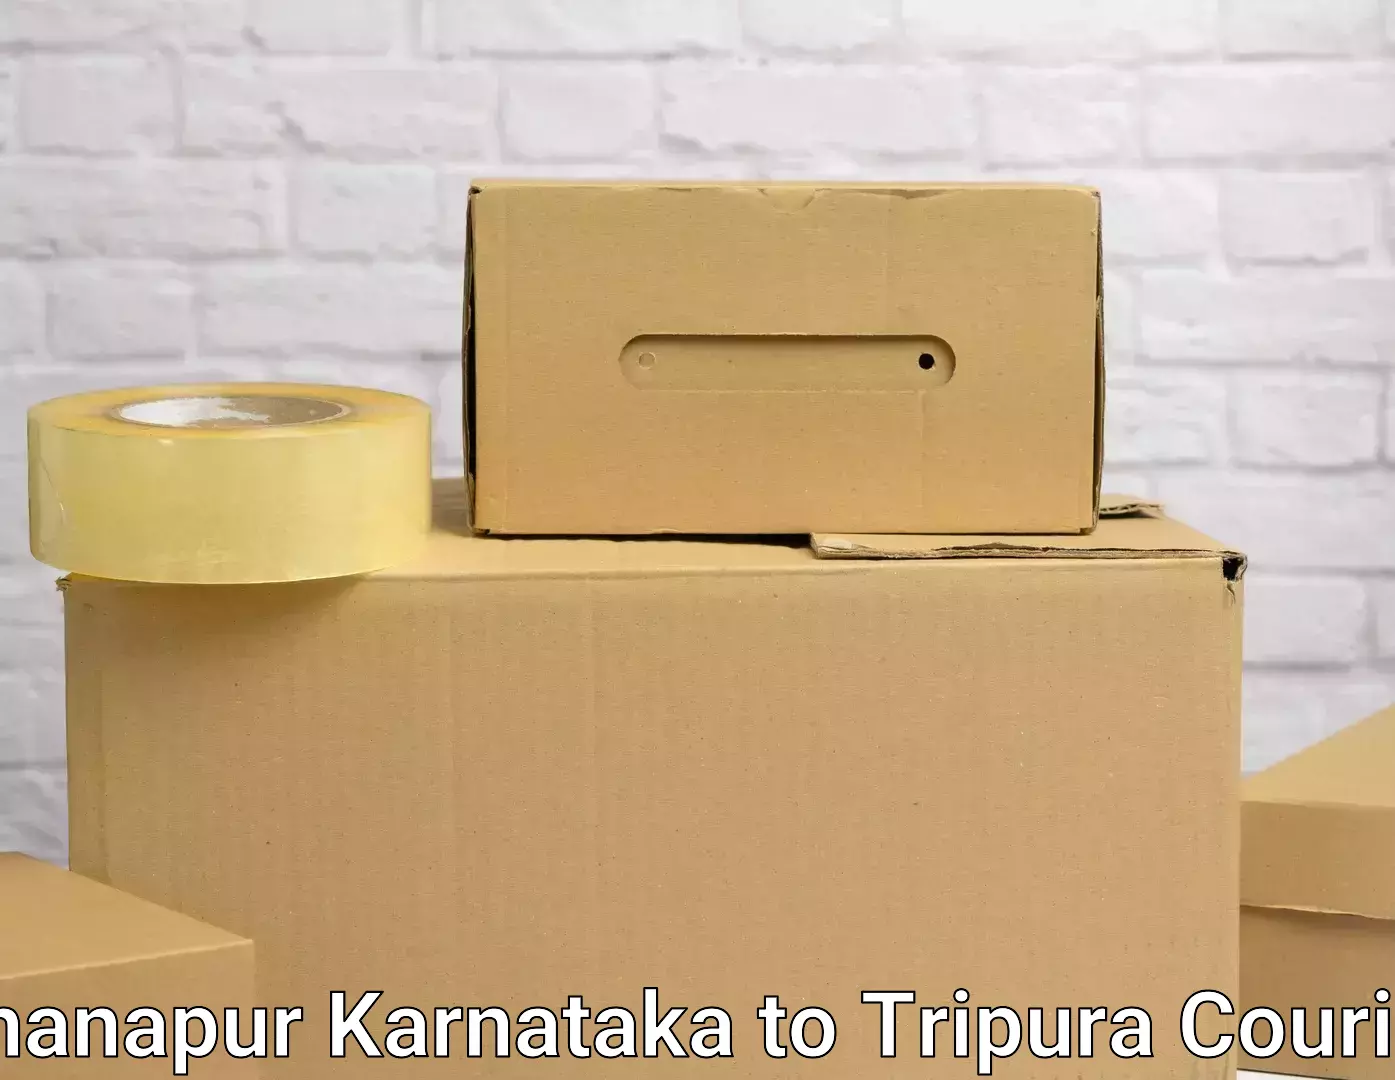 Household transport experts Khanapur Karnataka to Kailashahar